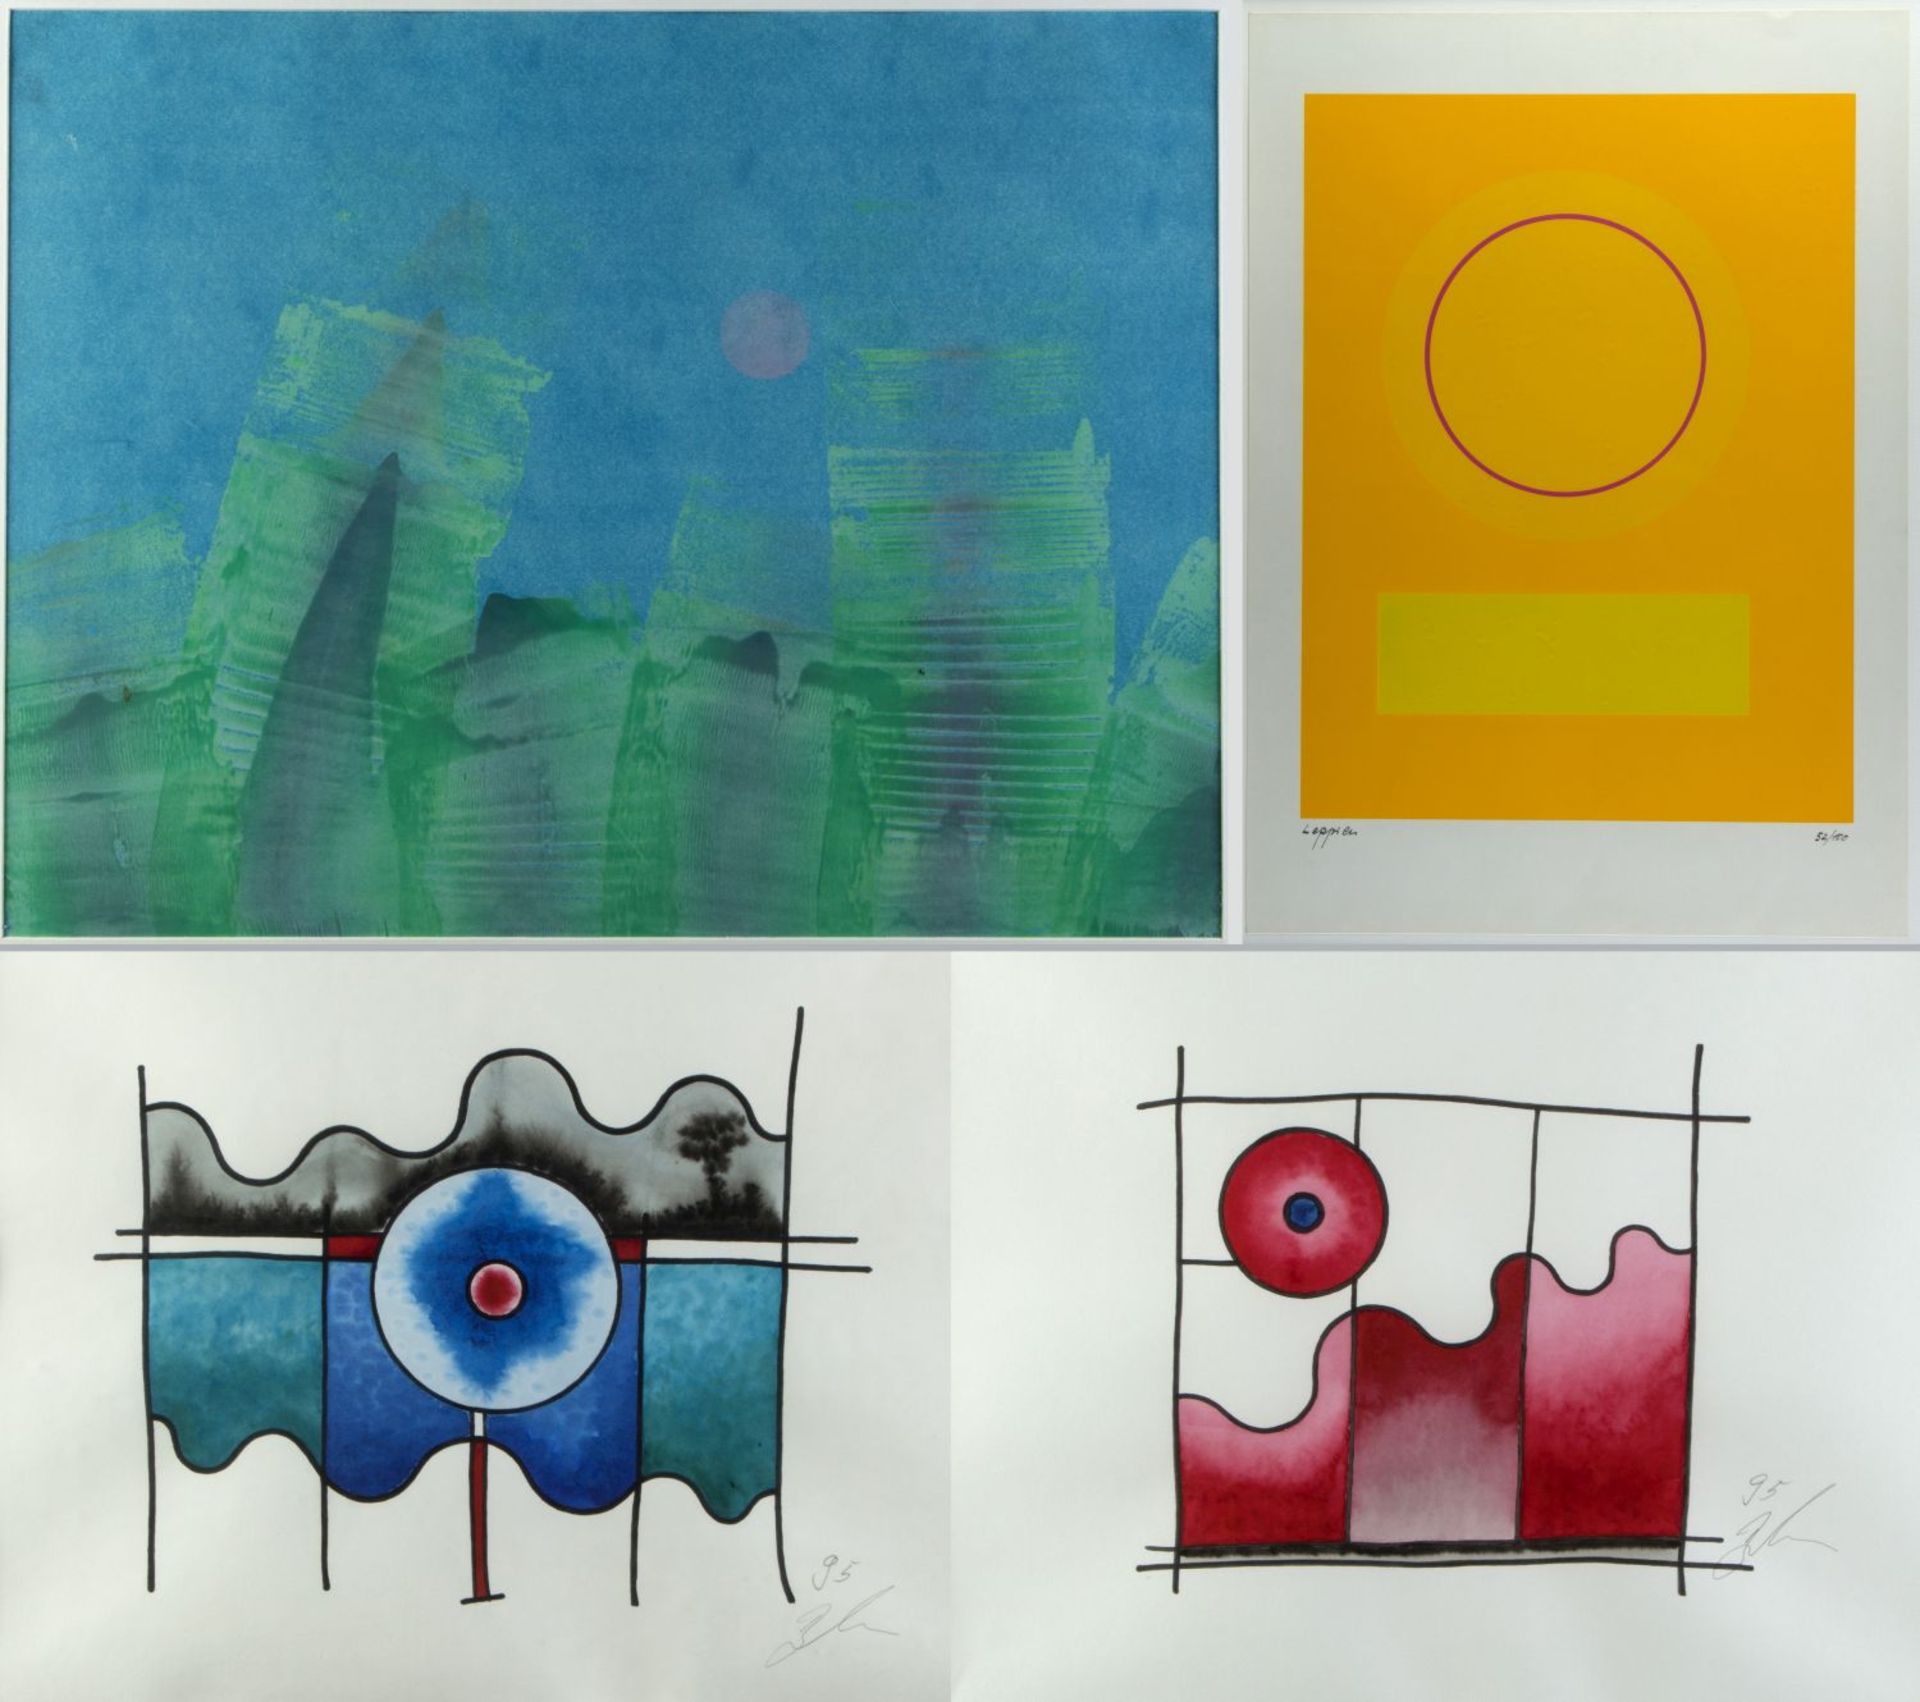 Leppien, Jean u.a. Komposition mit einem Kreis. Variation blau/grün rote Sonne u.a. 2 Farbse